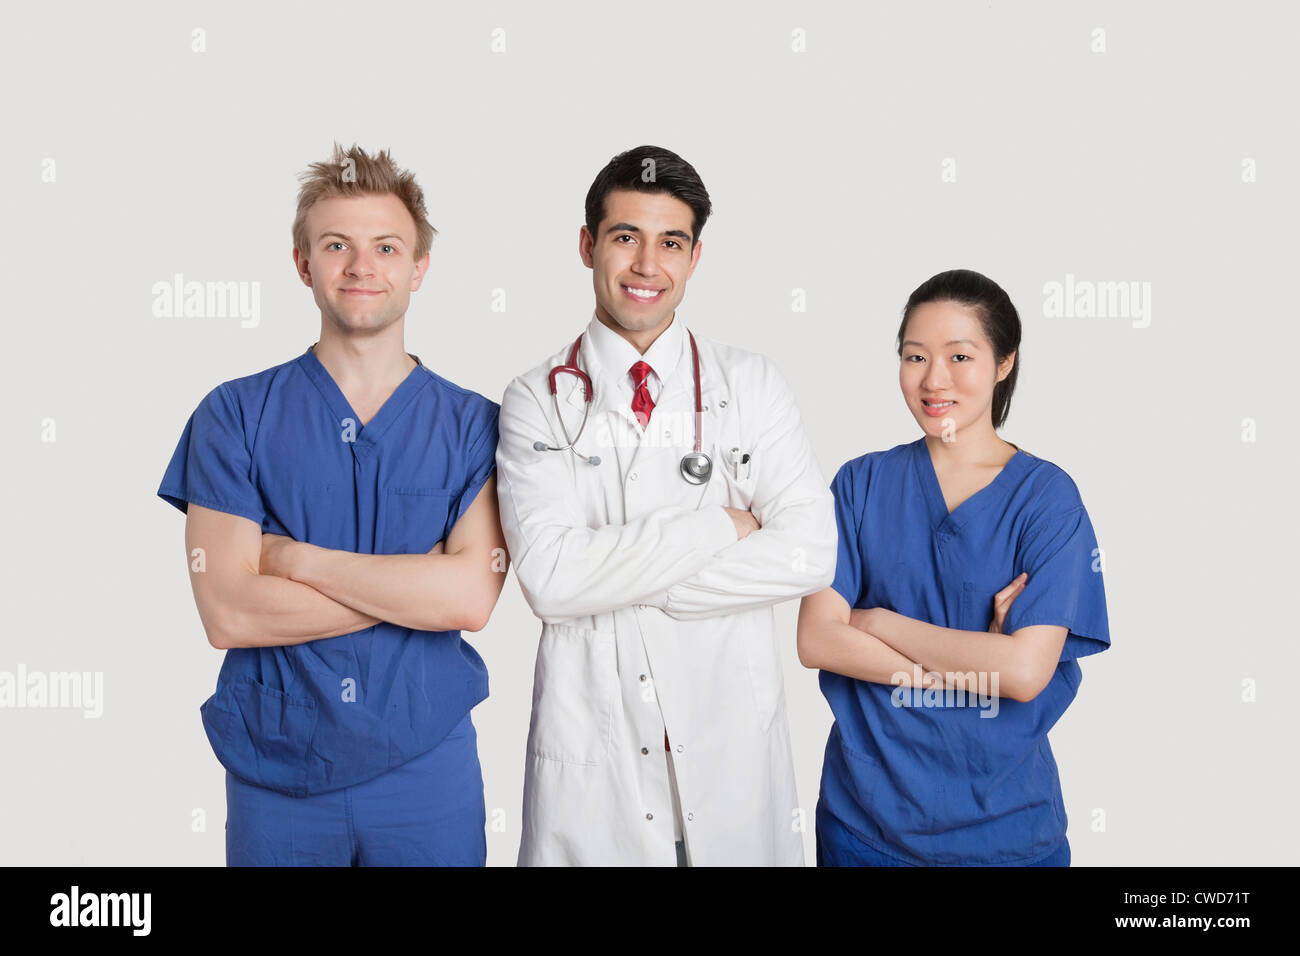 Portrait de professionnels de santé multi ethnic debout avec les bras croisés sur fond gris Banque D'Images